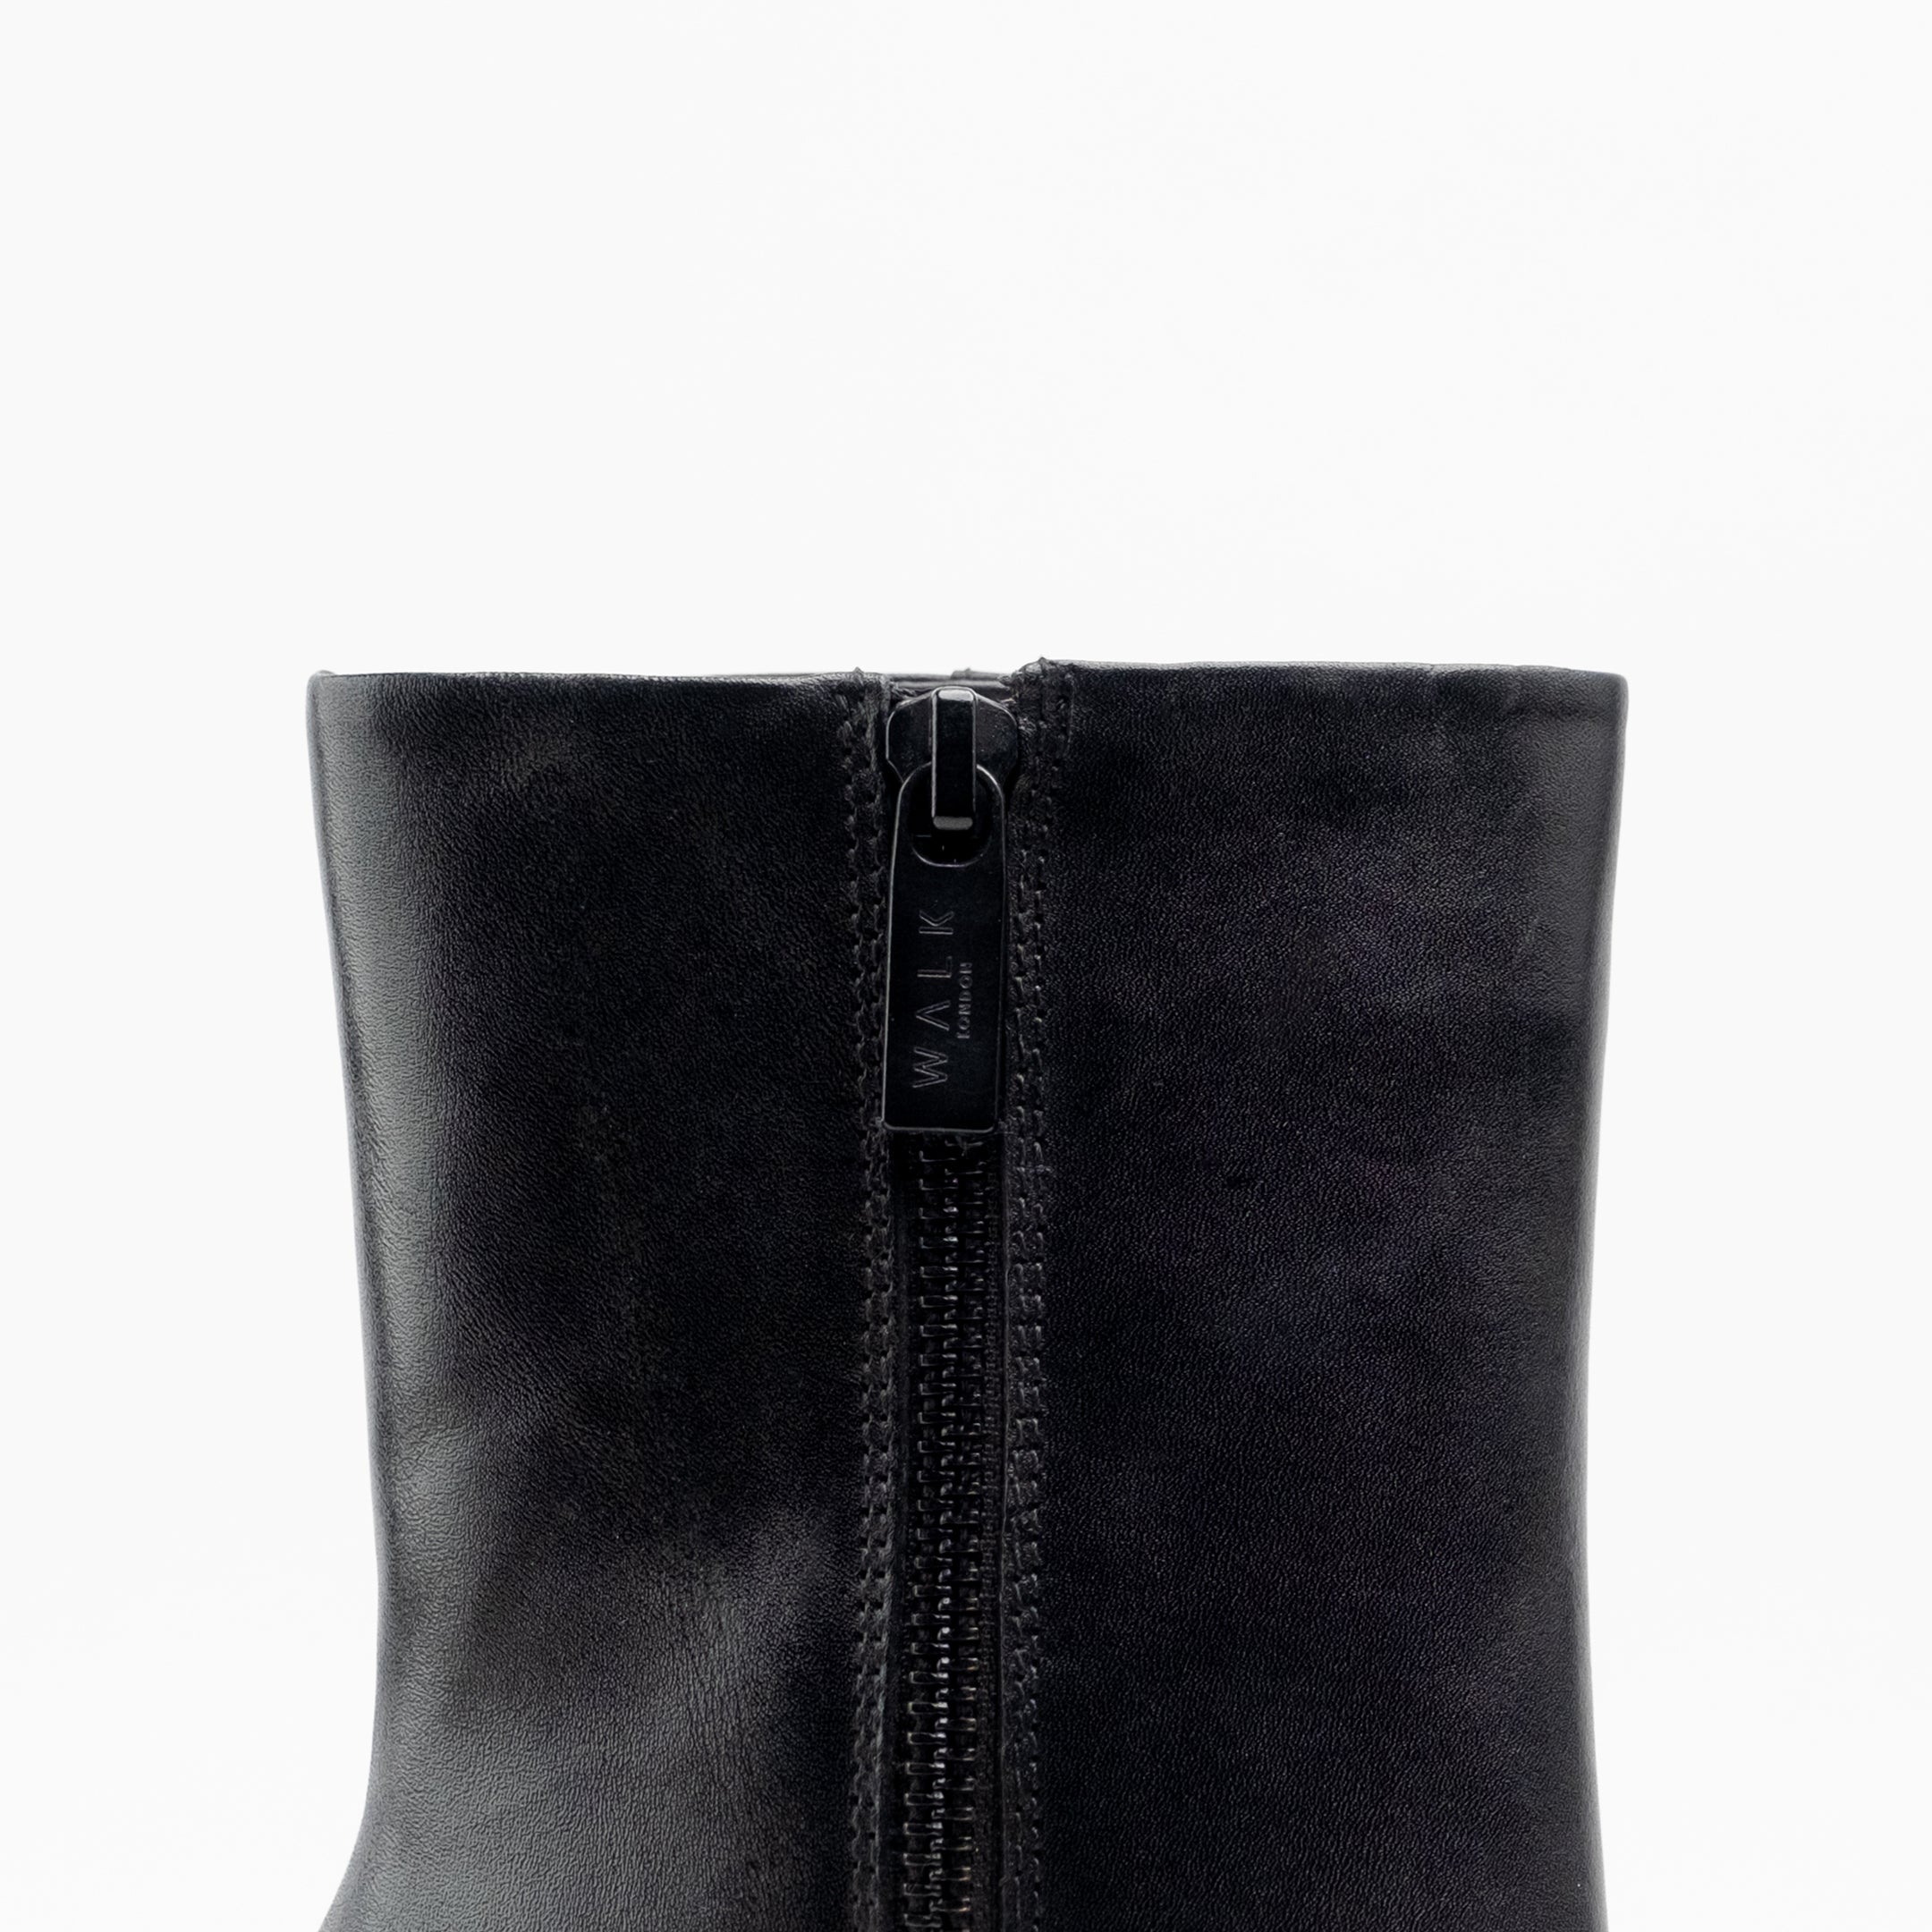 Walk London Women's Poppy Platform Boot in Black Leather